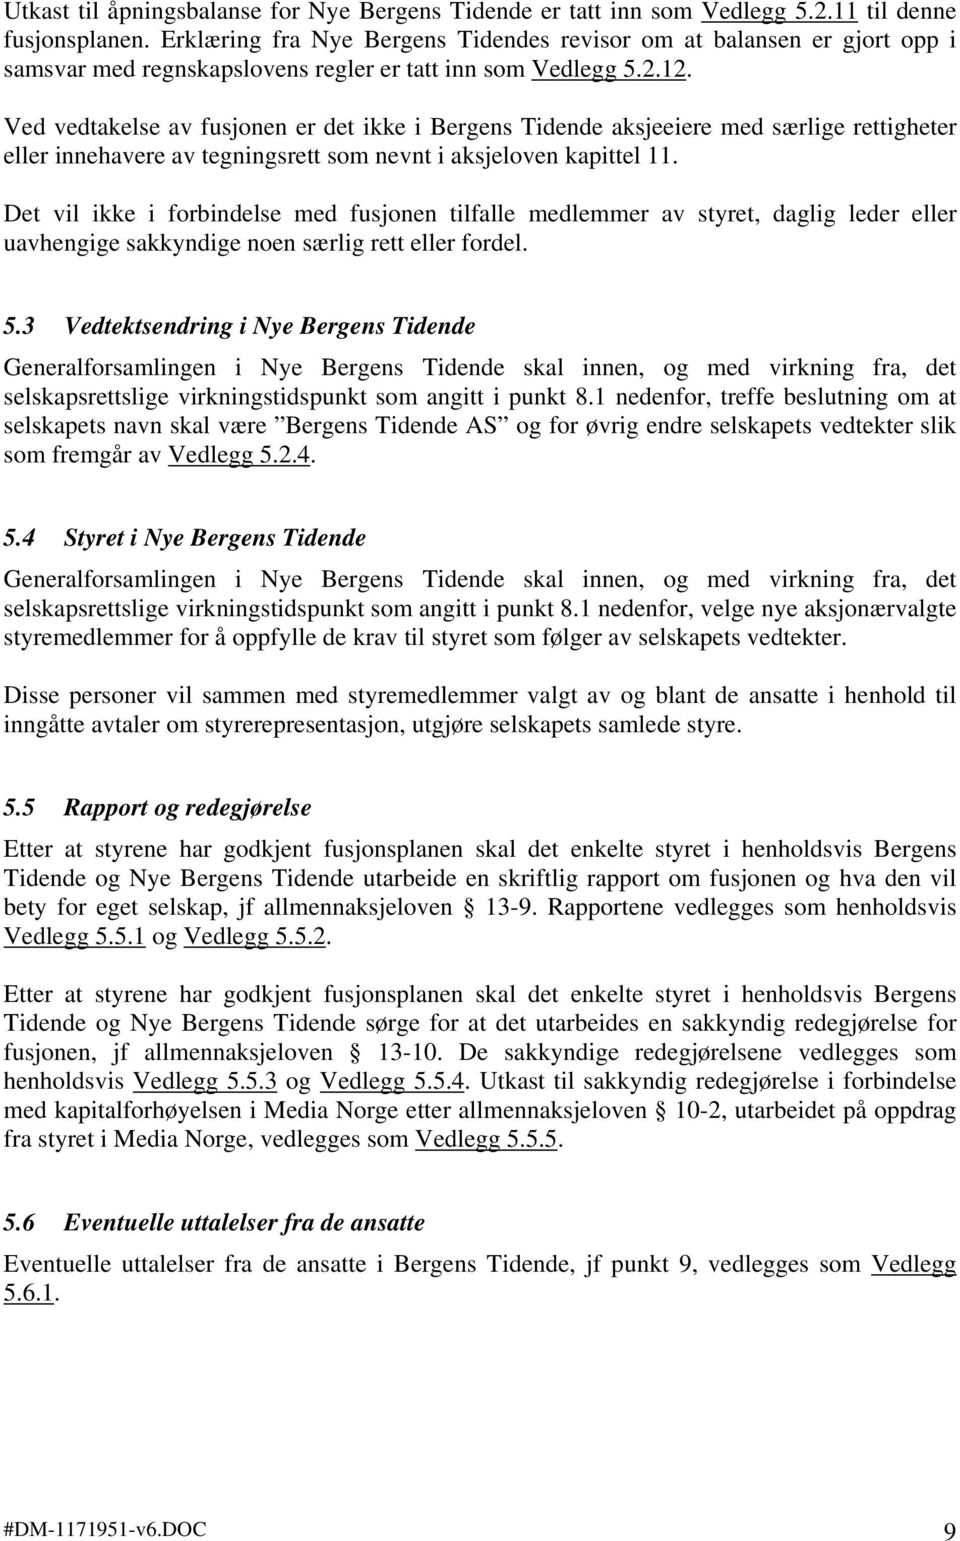 Ved vedtakelse av fusjonen er det ikke i Bergens Tidende aksjeeiere med særlige rettigheter eller innehavere av tegningsrett som nevnt i aksjeloven kapittel 11.